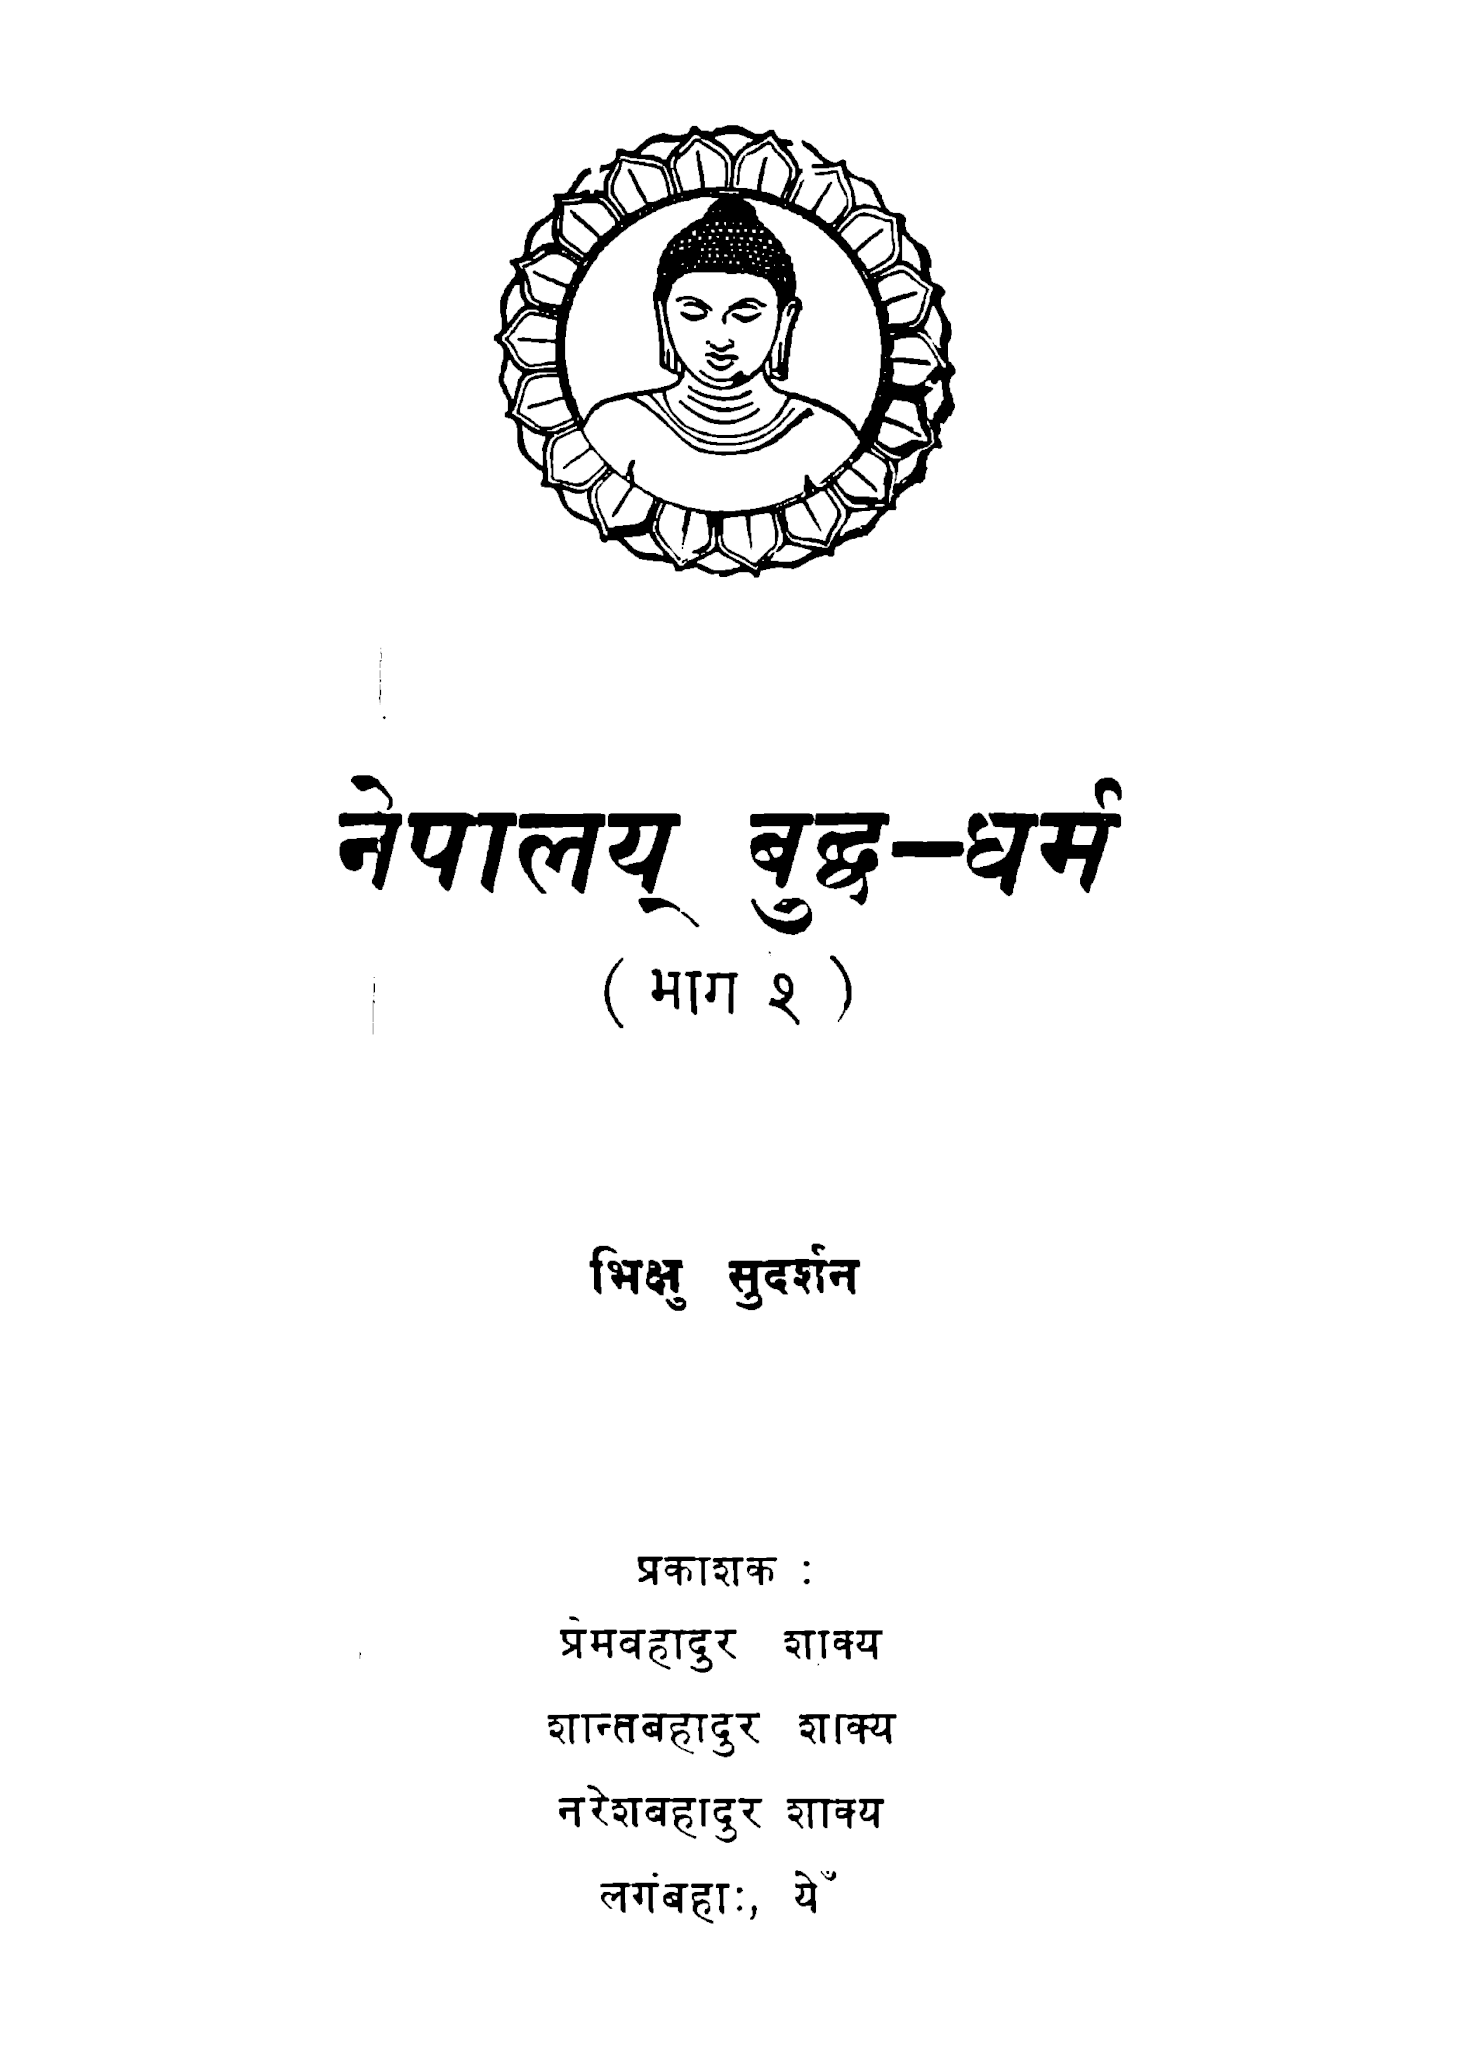 नेपालय् बुध्द-धर्म (भाग २)